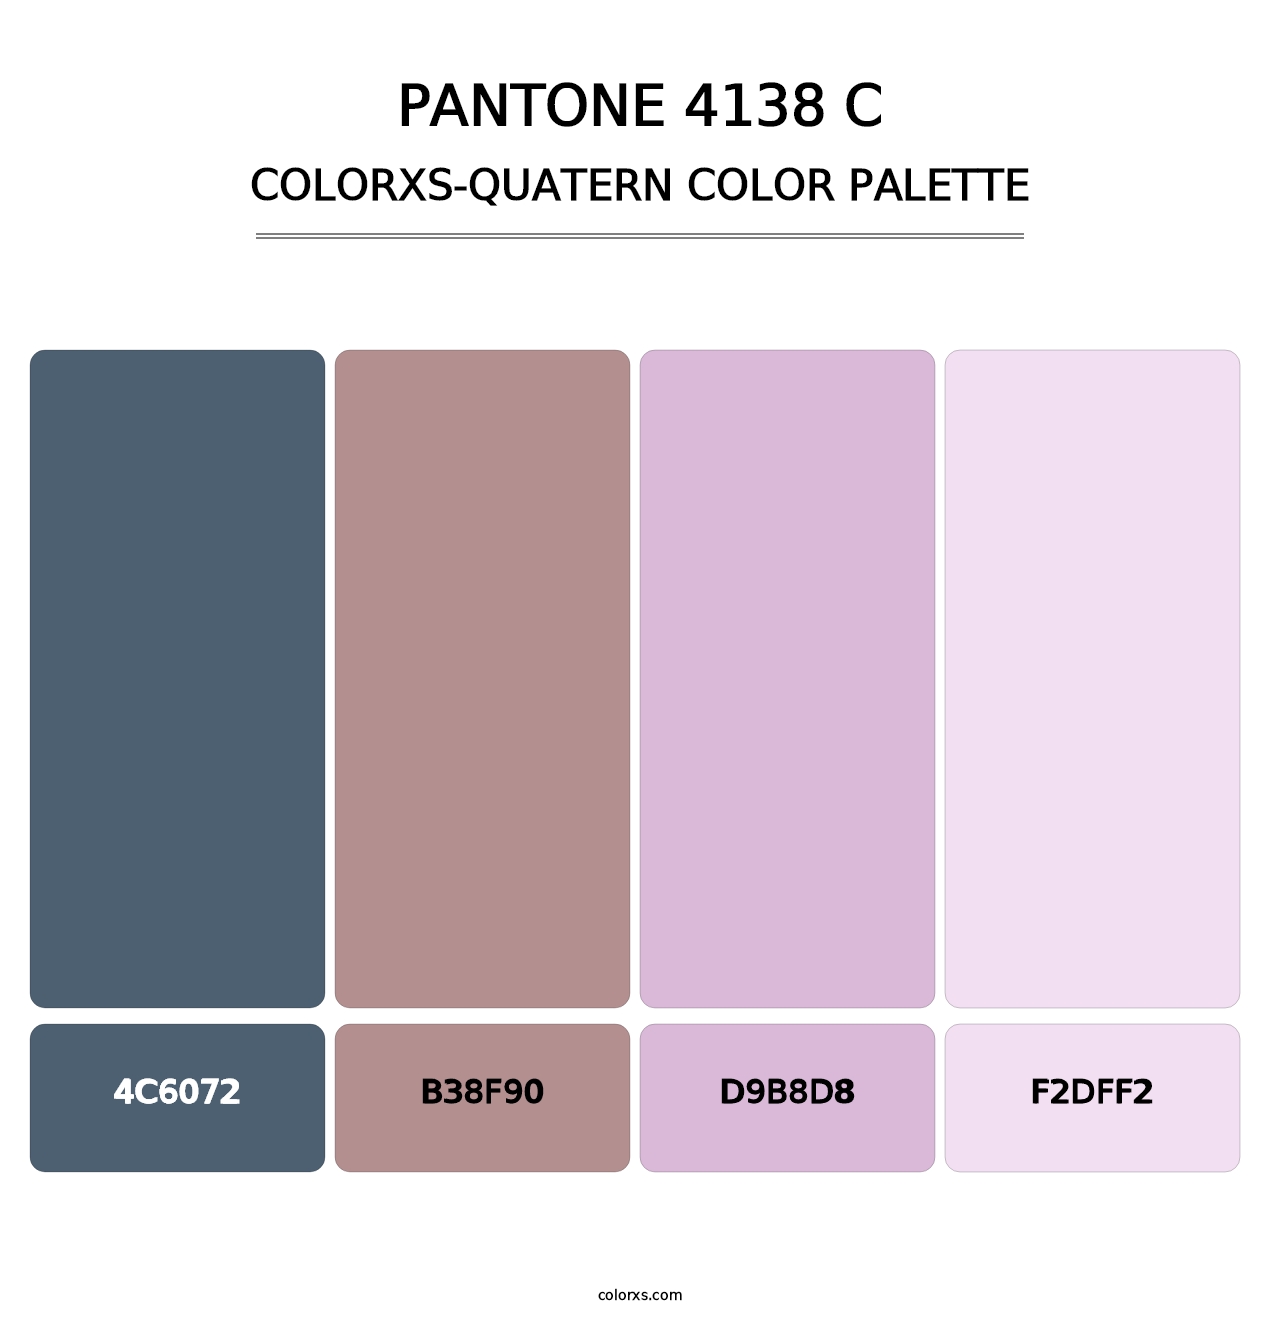 PANTONE 4138 C - Colorxs Quatern Palette